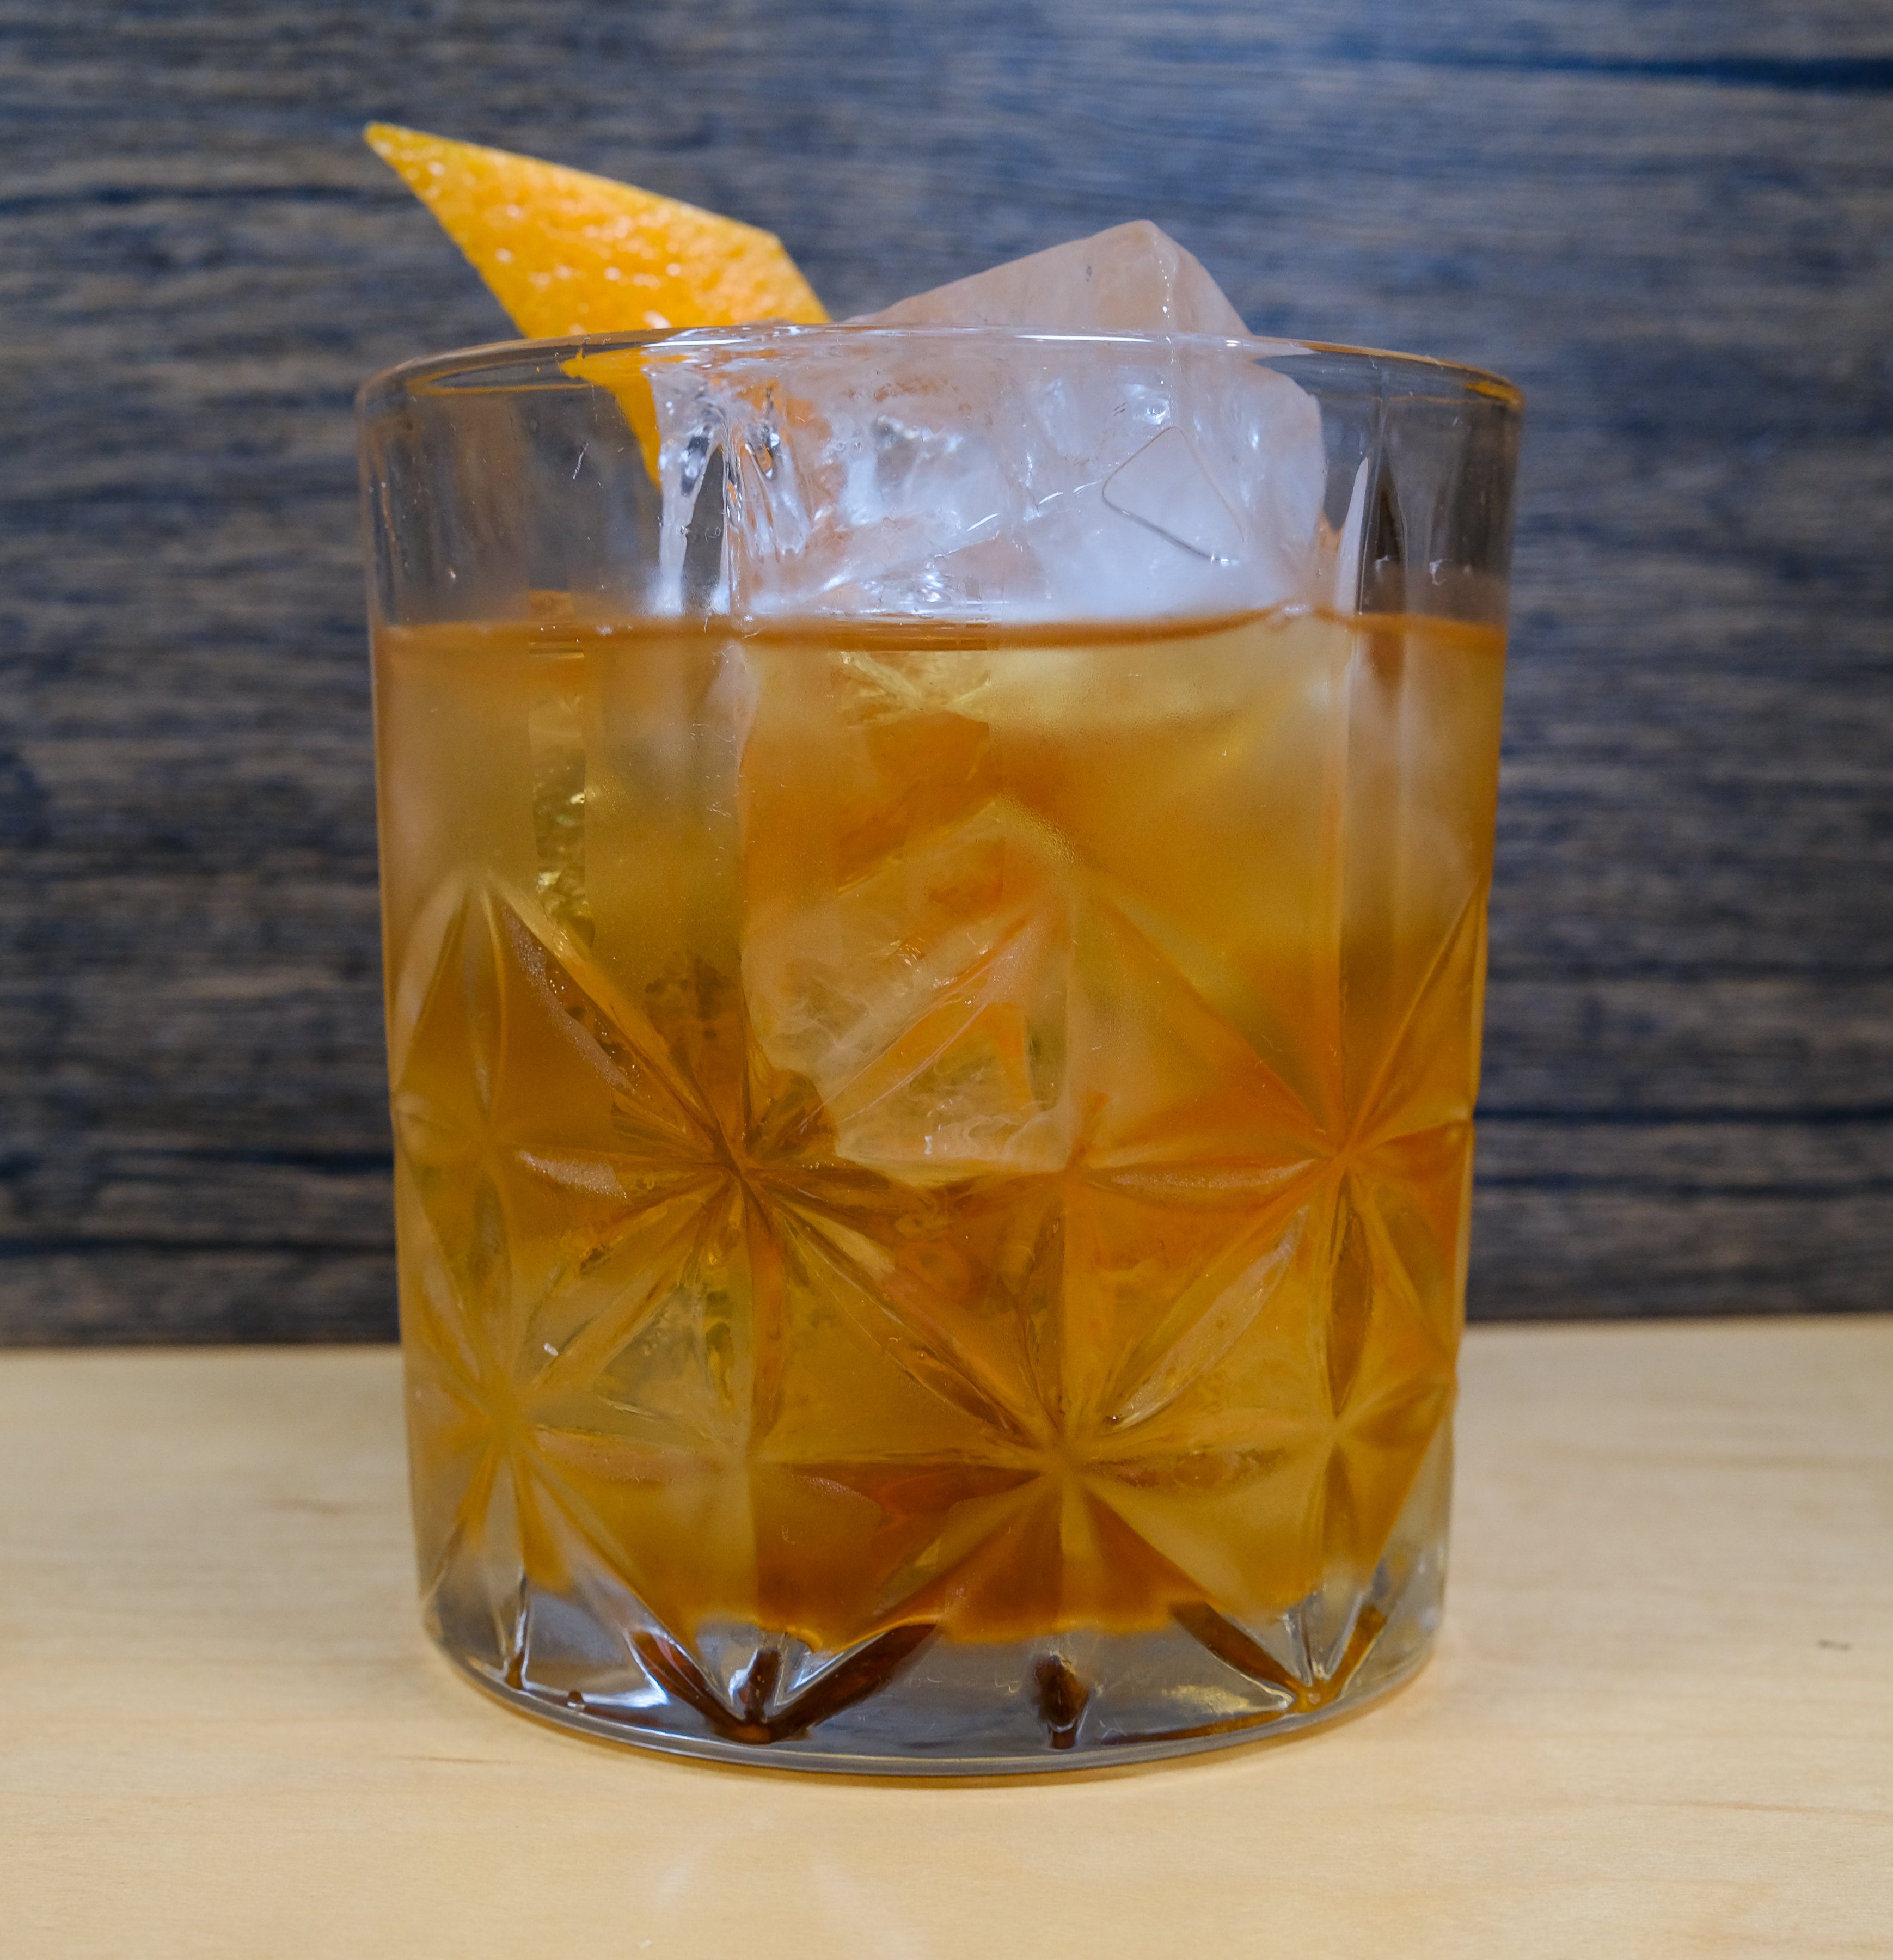 AFewCocktails Old Fashioned Kit – A Few Cocktails